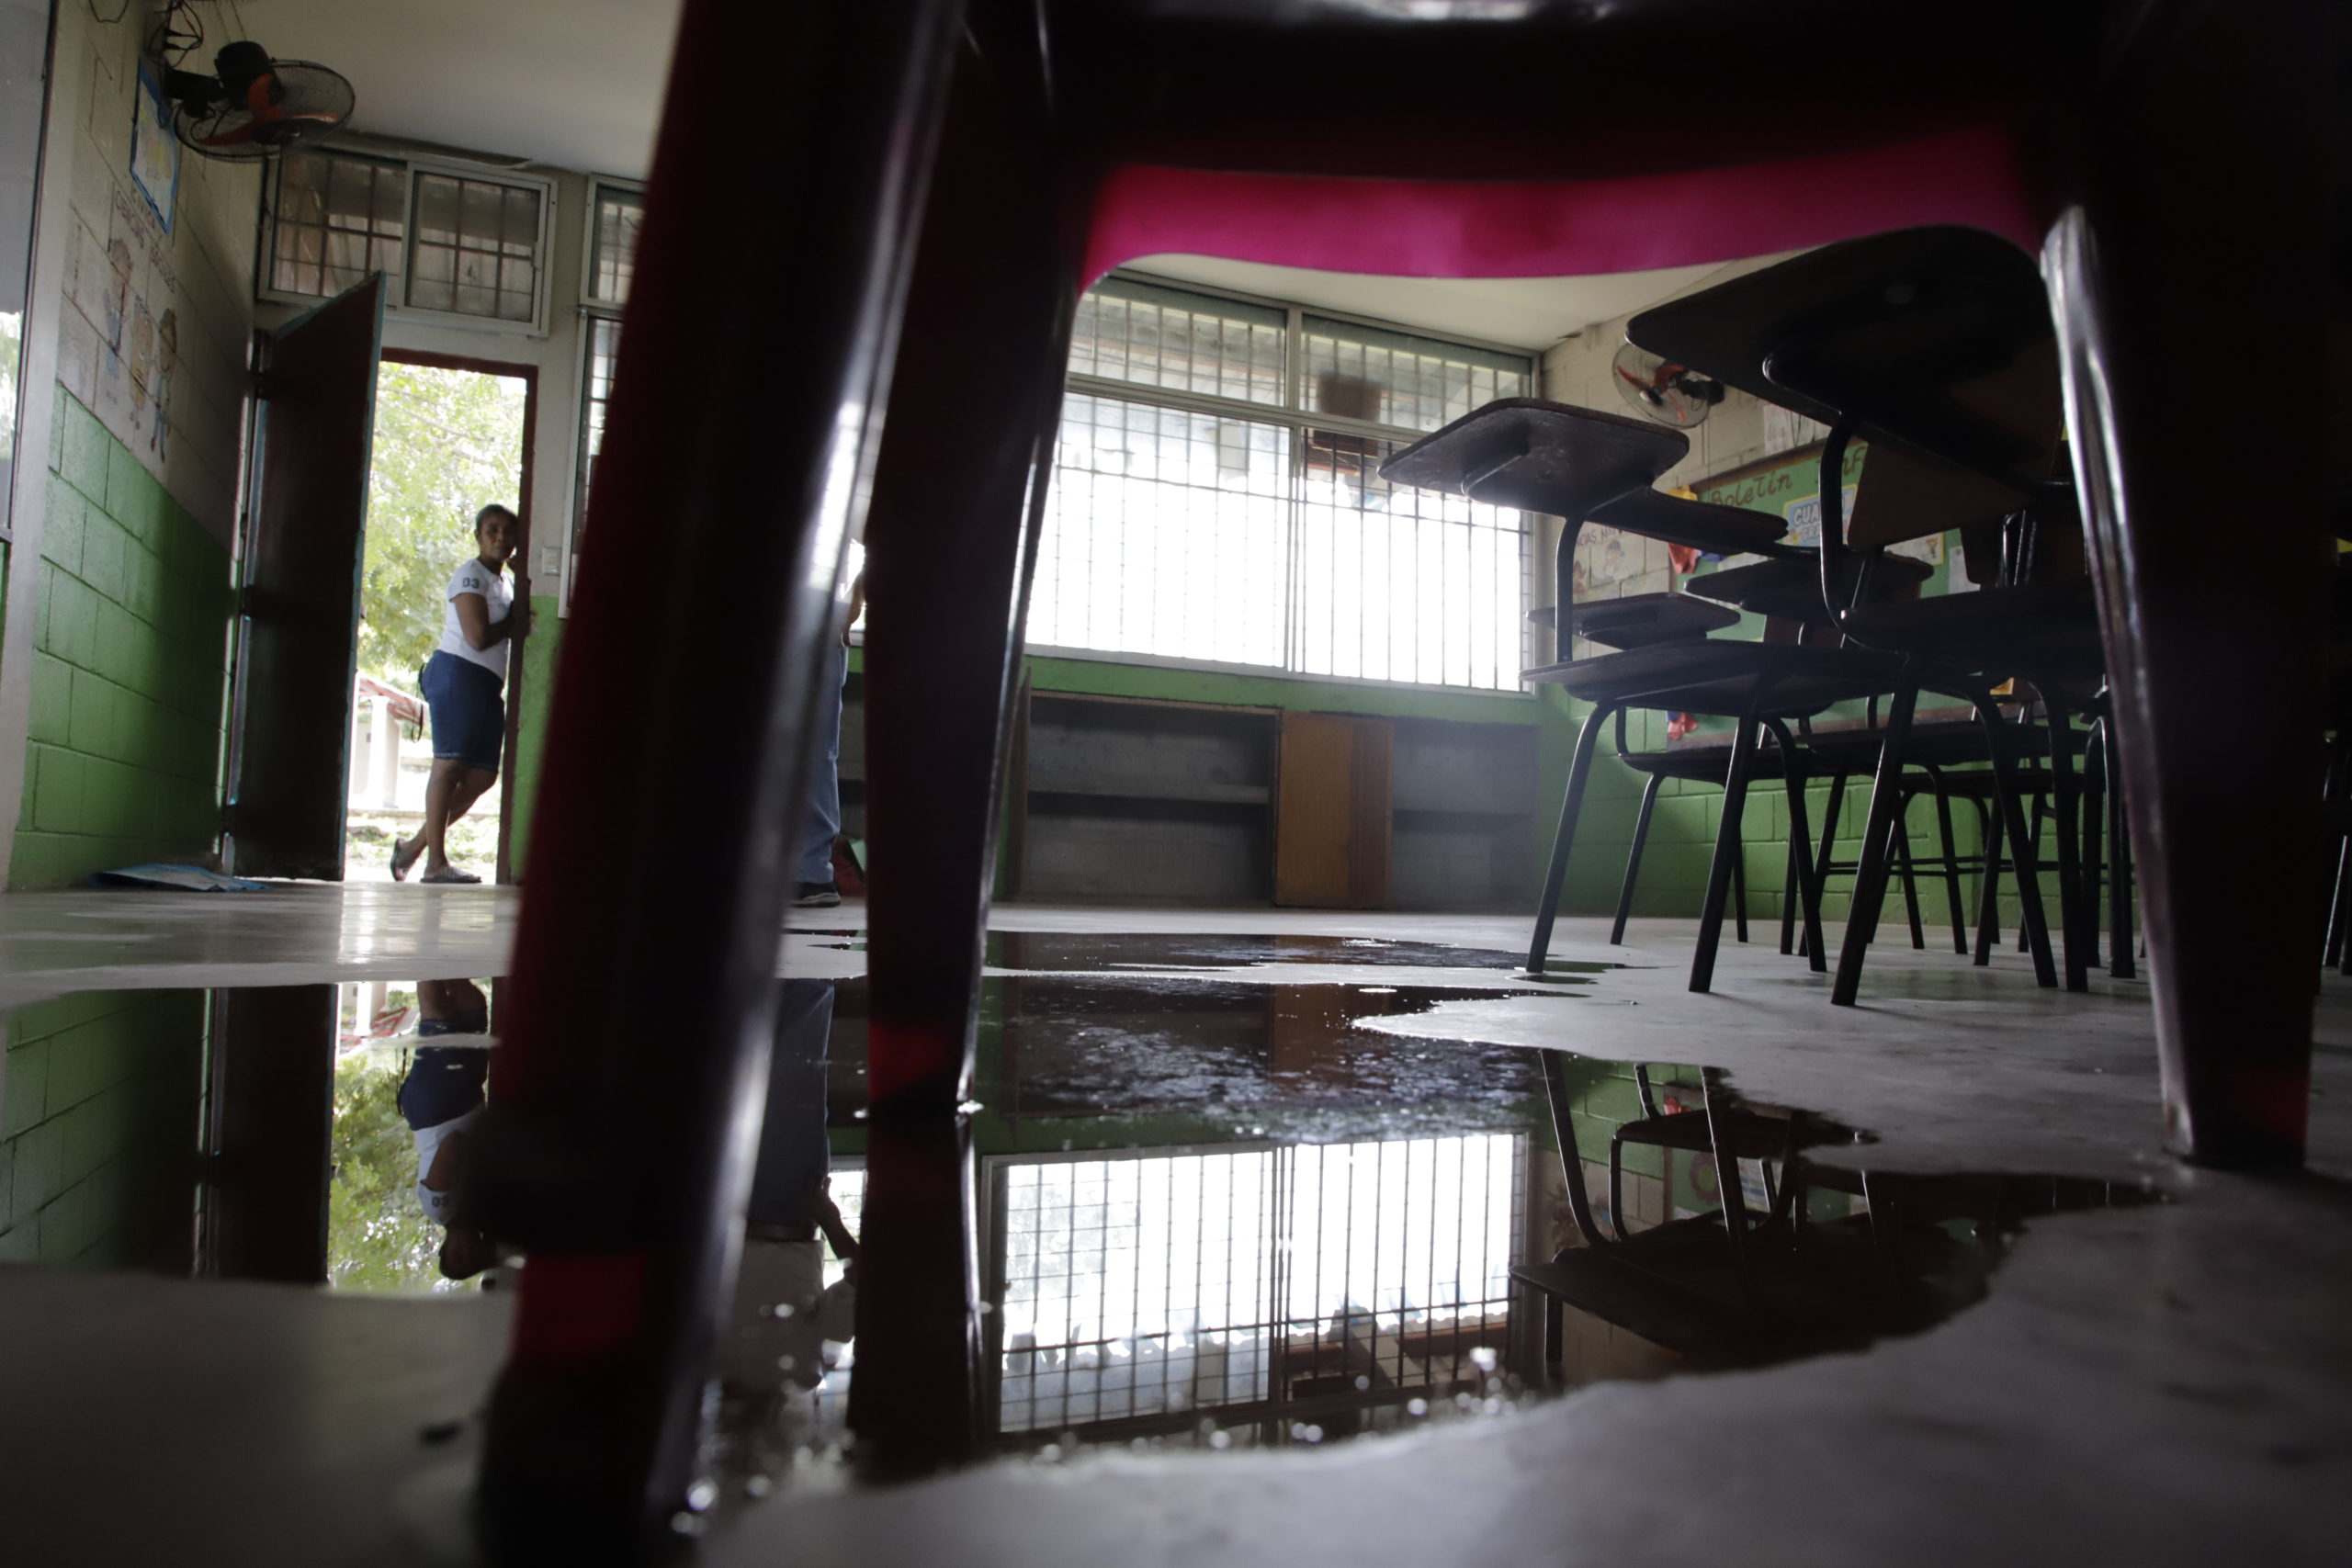 El sedimento acumulado en el patio y las goteras en el techo permiten la entrada de las aguas lluvias en la escuela de Tacamiche, San Manuel, Cortés. Foto CC/Amílcar Izaguirre